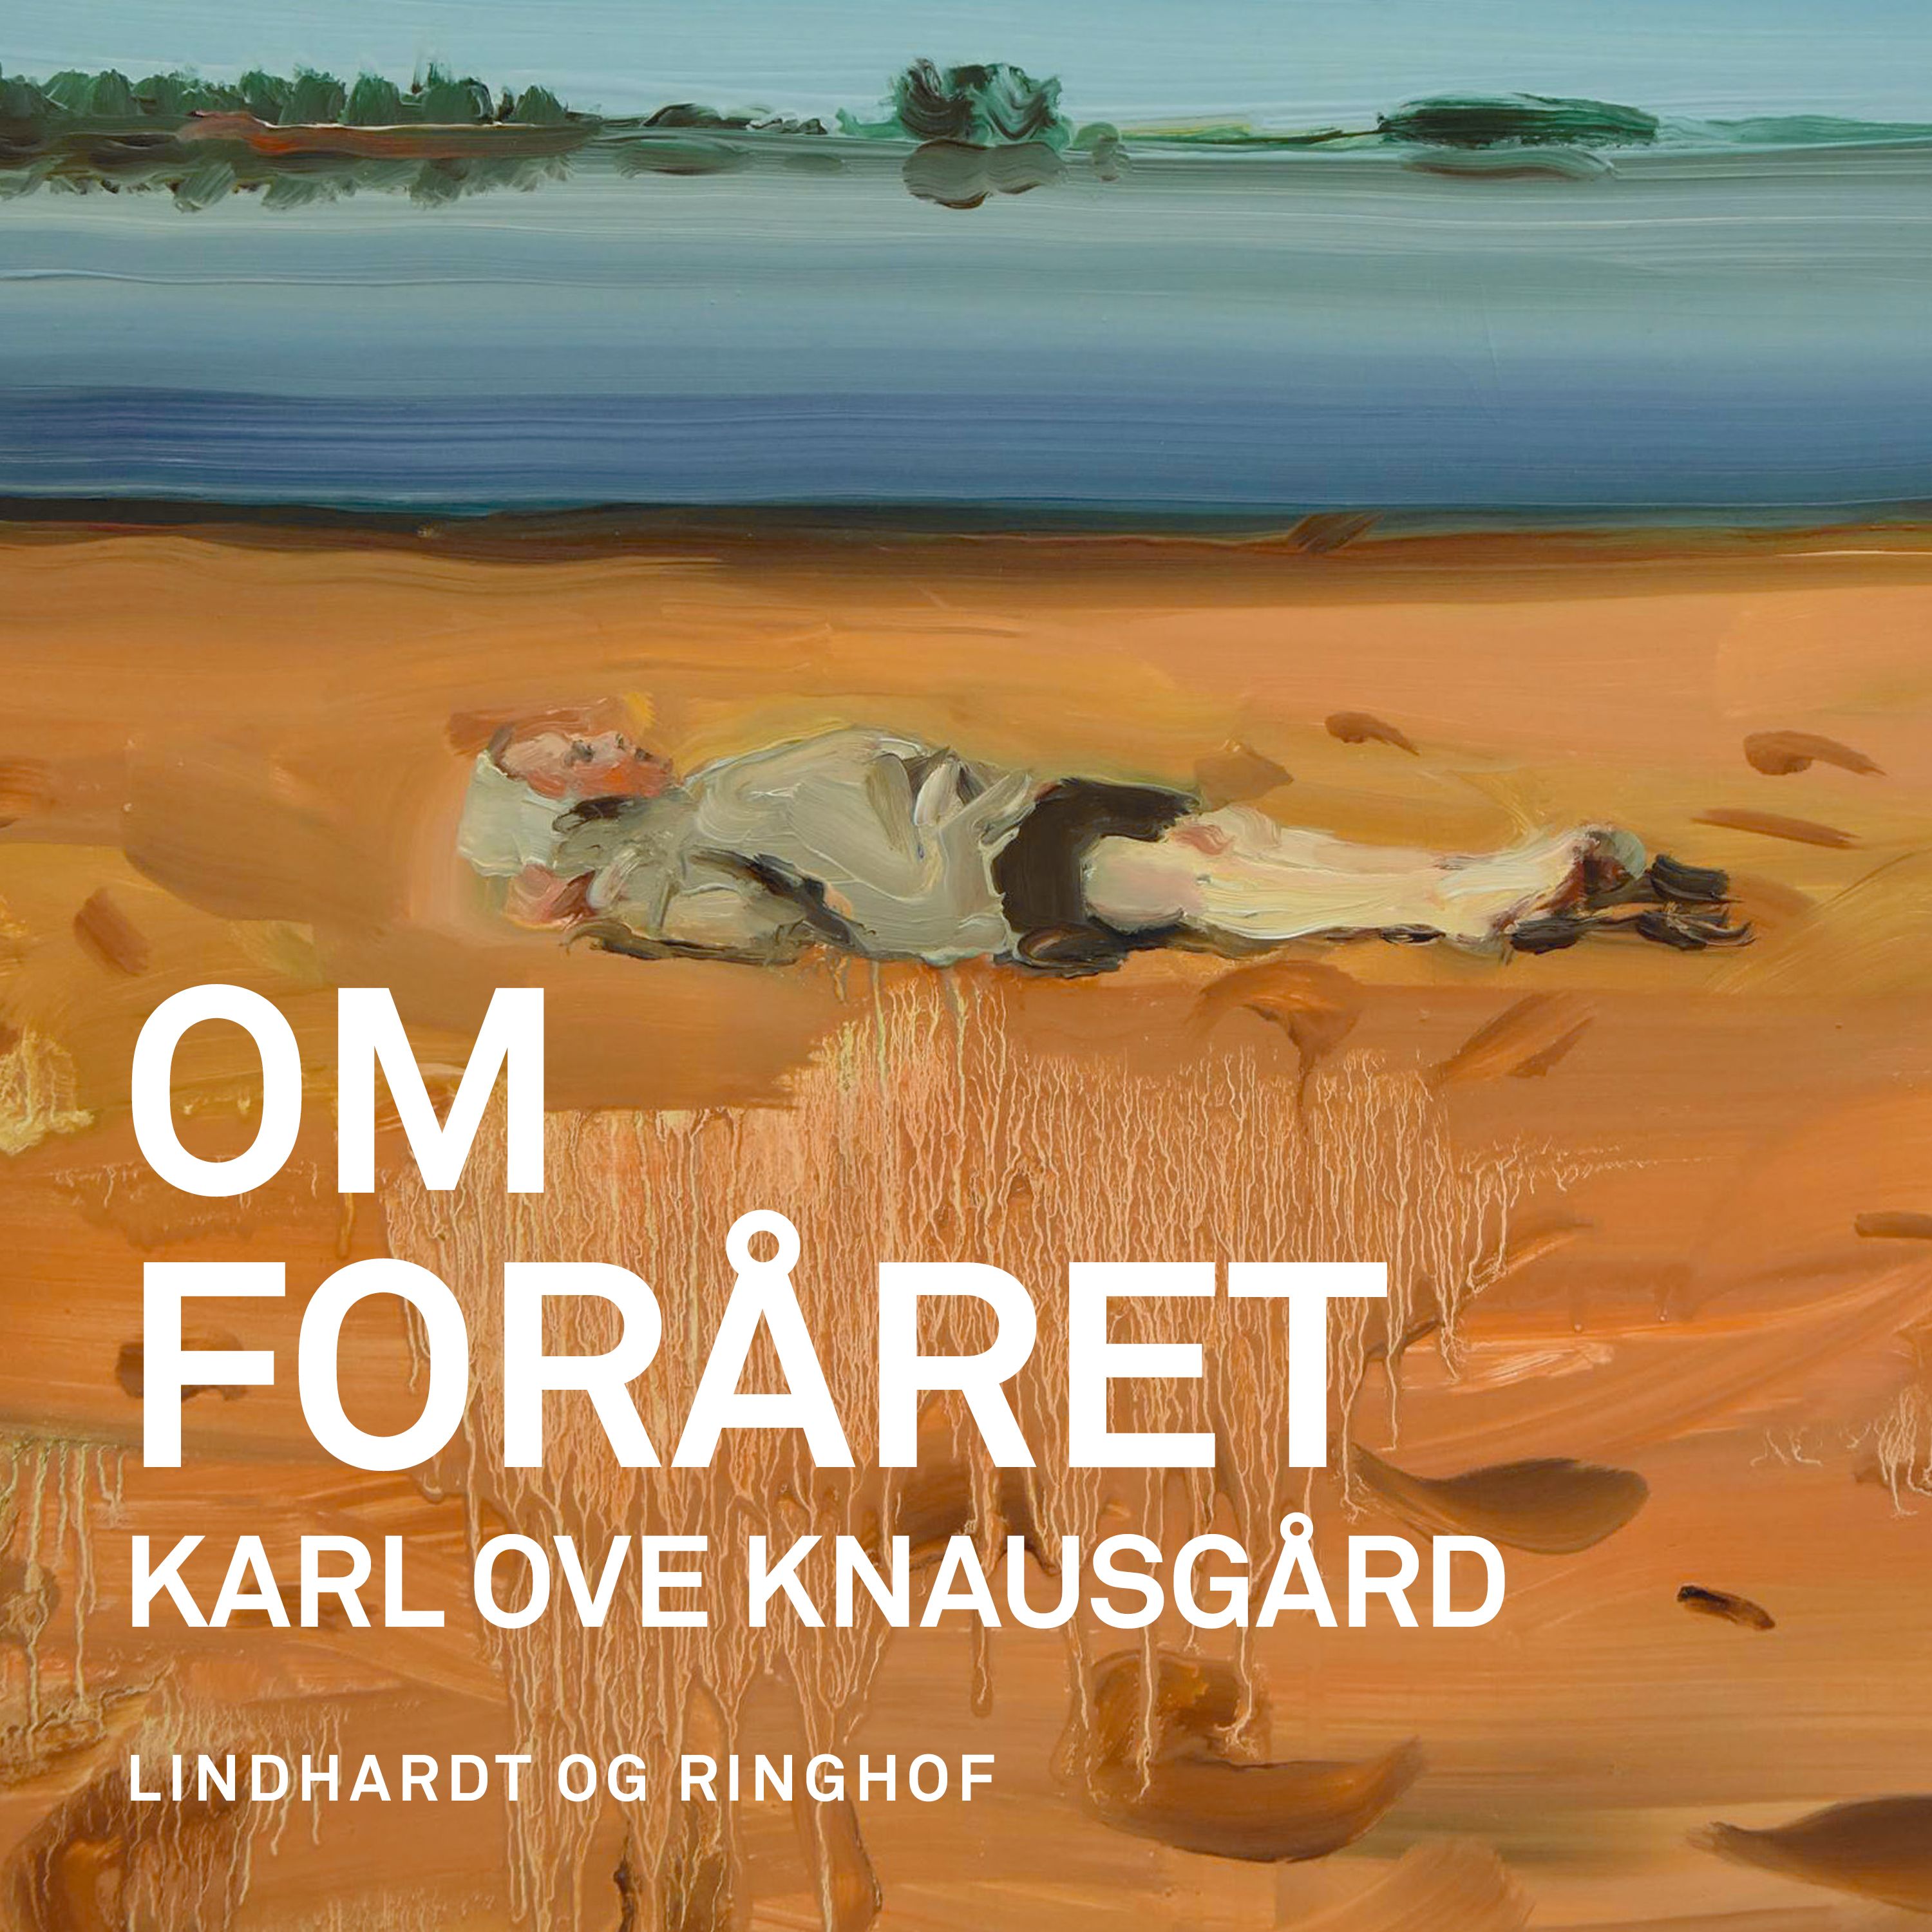 Om foråret, ljudbok av Karl Ove Knausgård